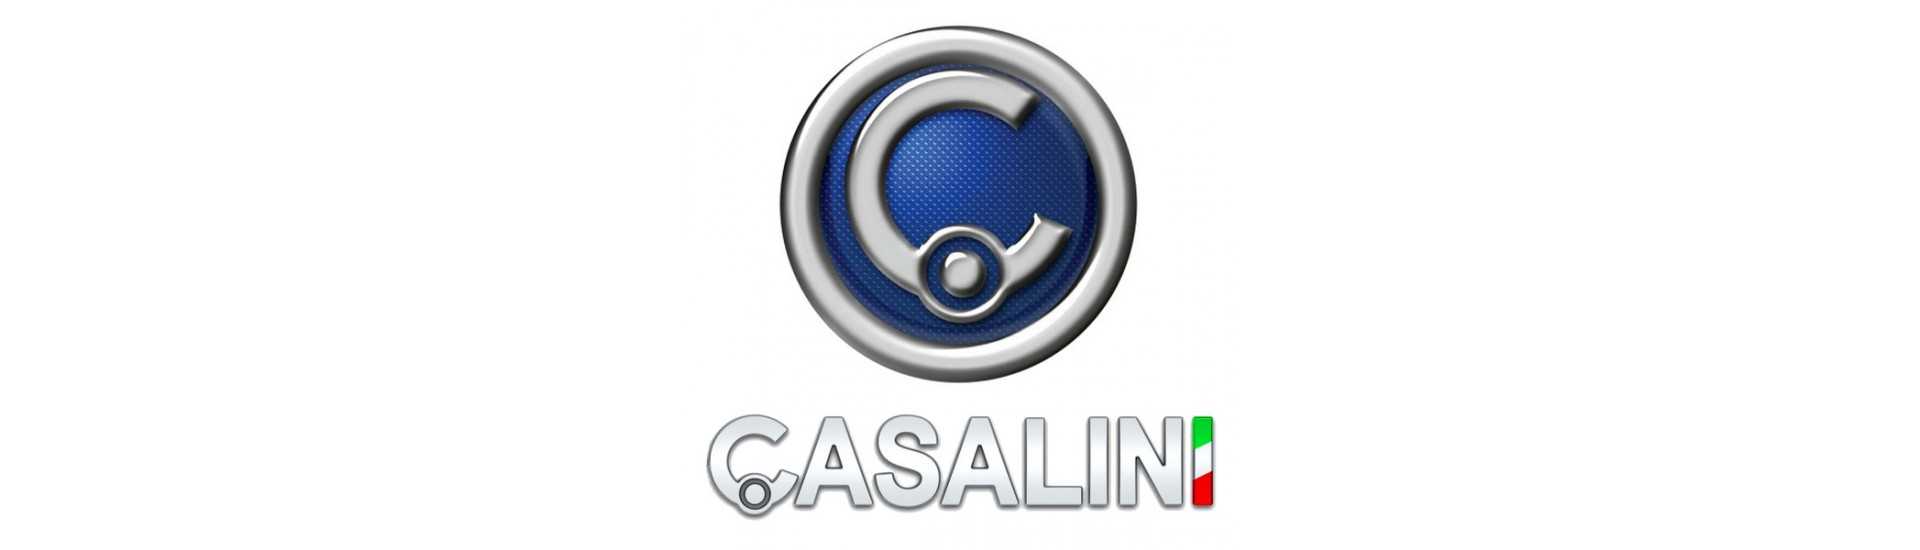 Geschwindigkeitsverringer zum besten Preis für Auto ohne Lizenz Casalini